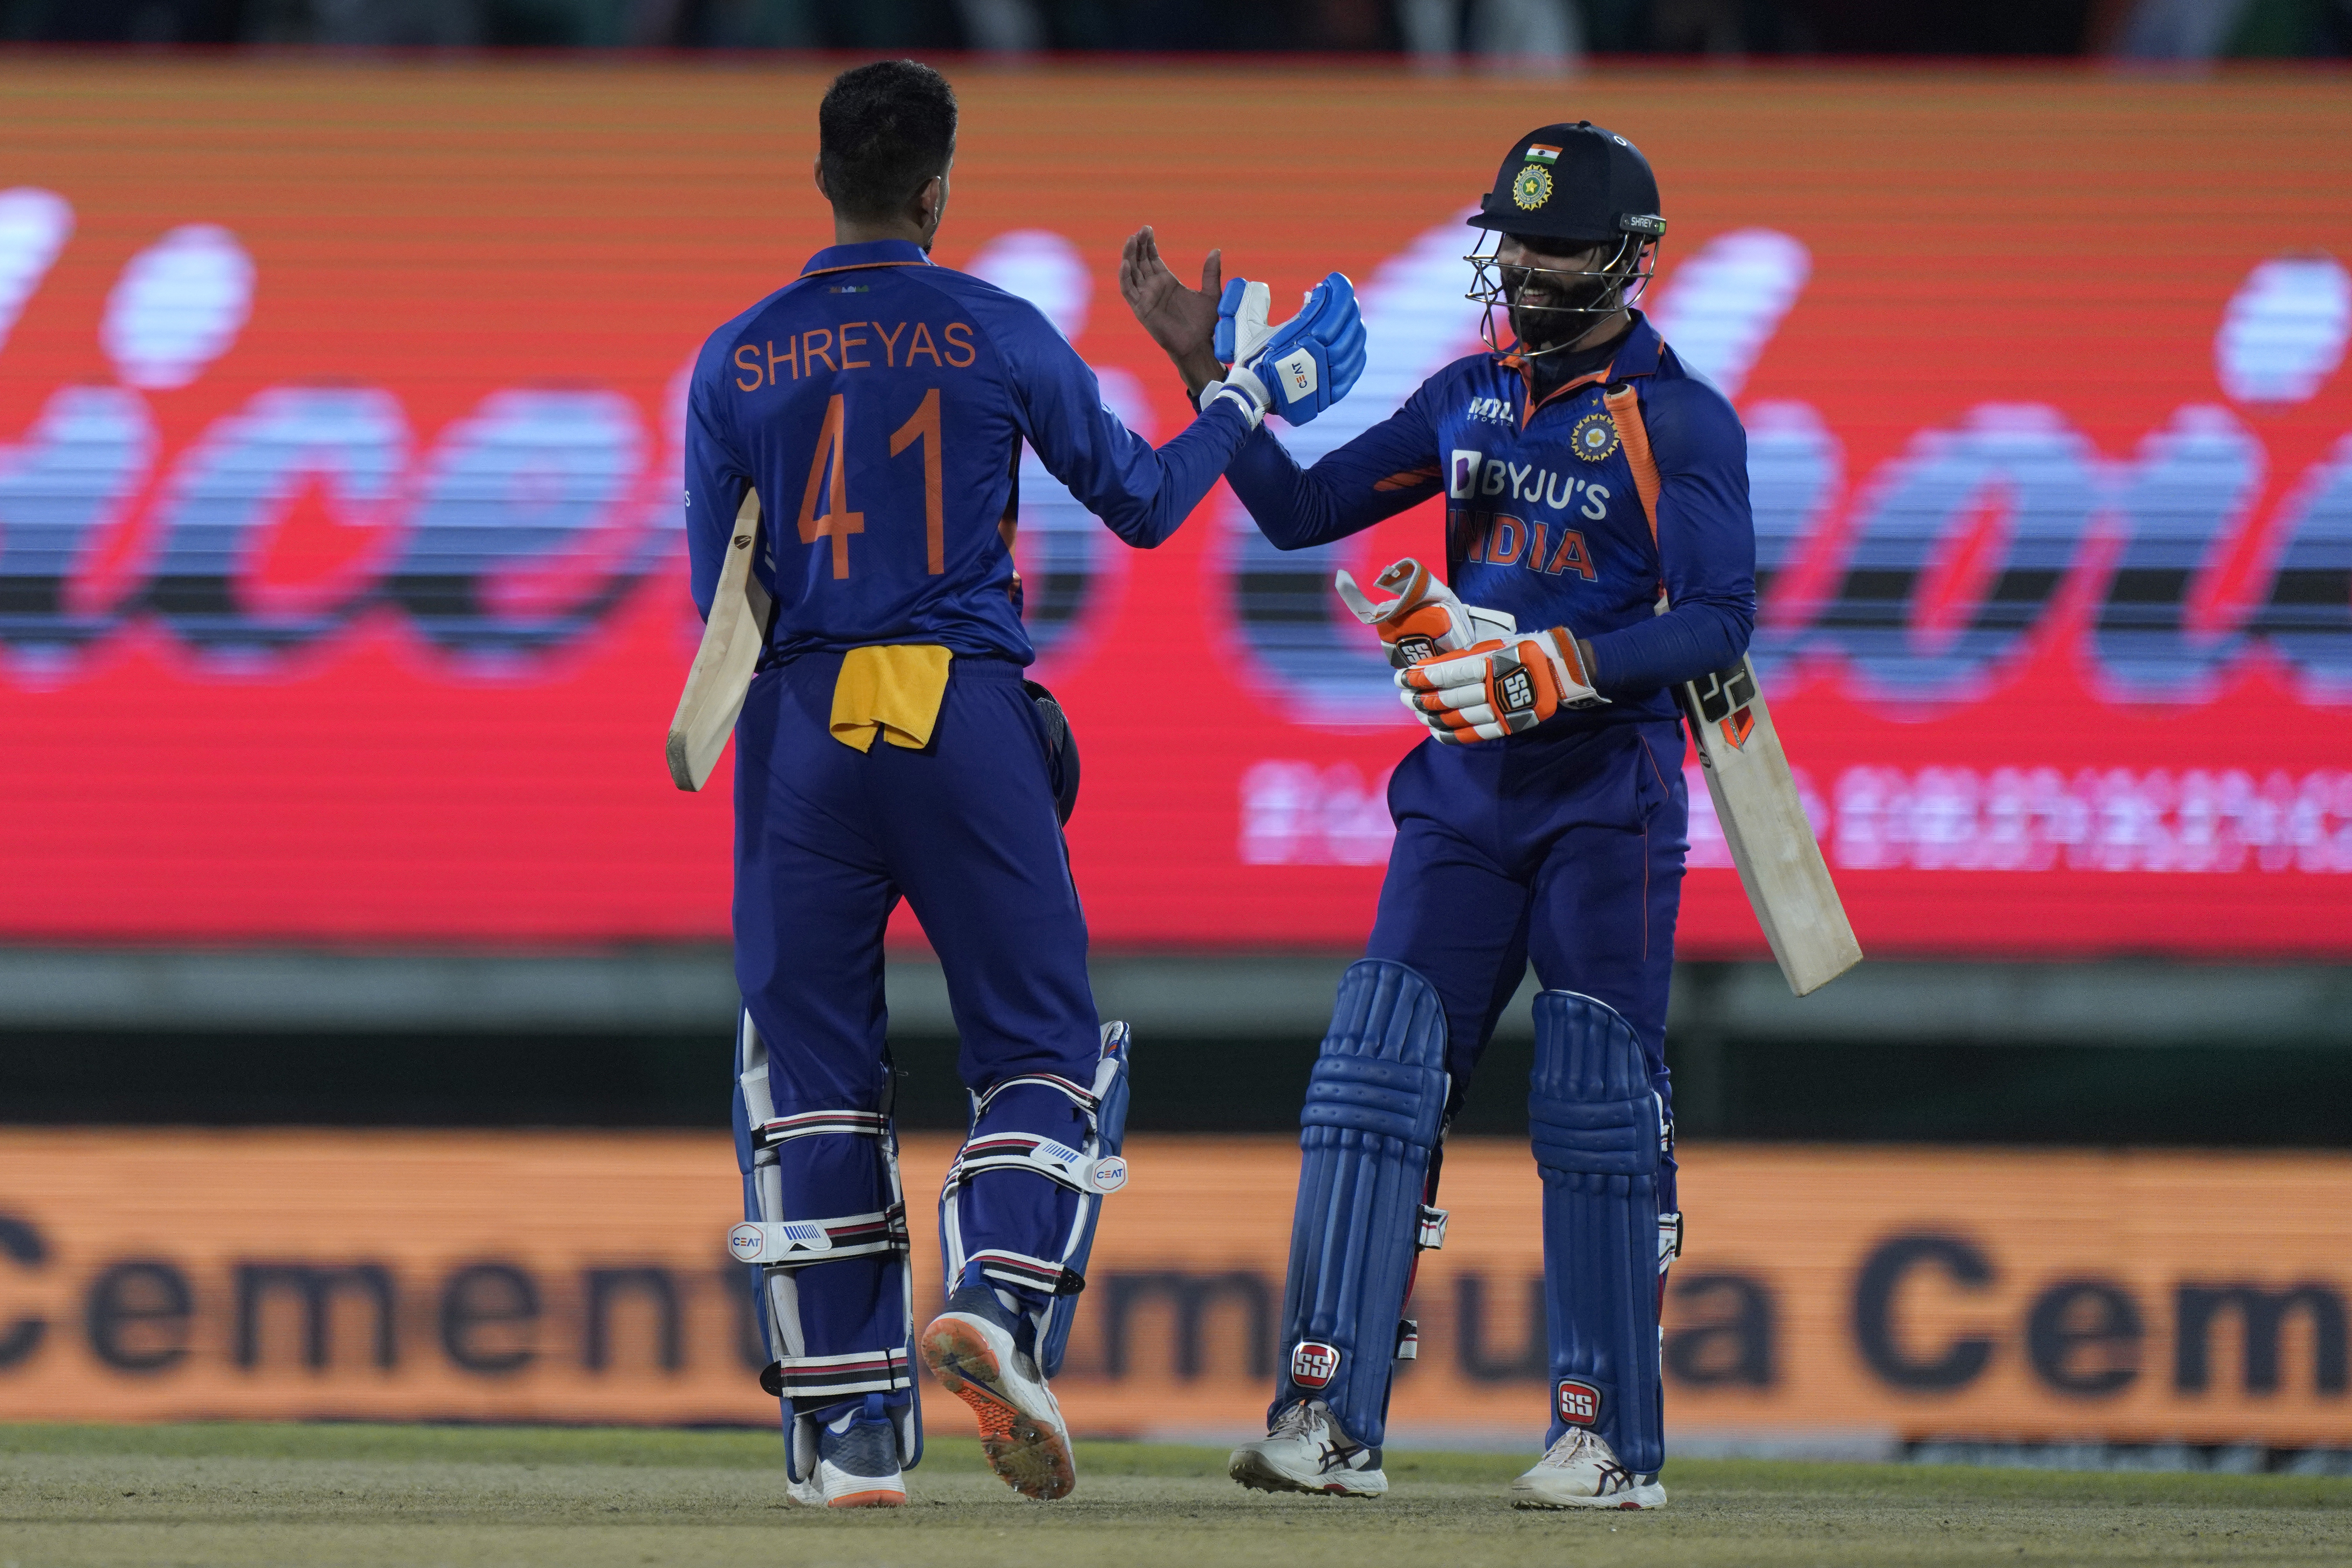  இந்திய அணி 16.5 ஓவர்களில் 6 விக்கெட்டுகளை இழந்து 3-0 என்ற கணக்கில் வெற்றி பெற்றது.